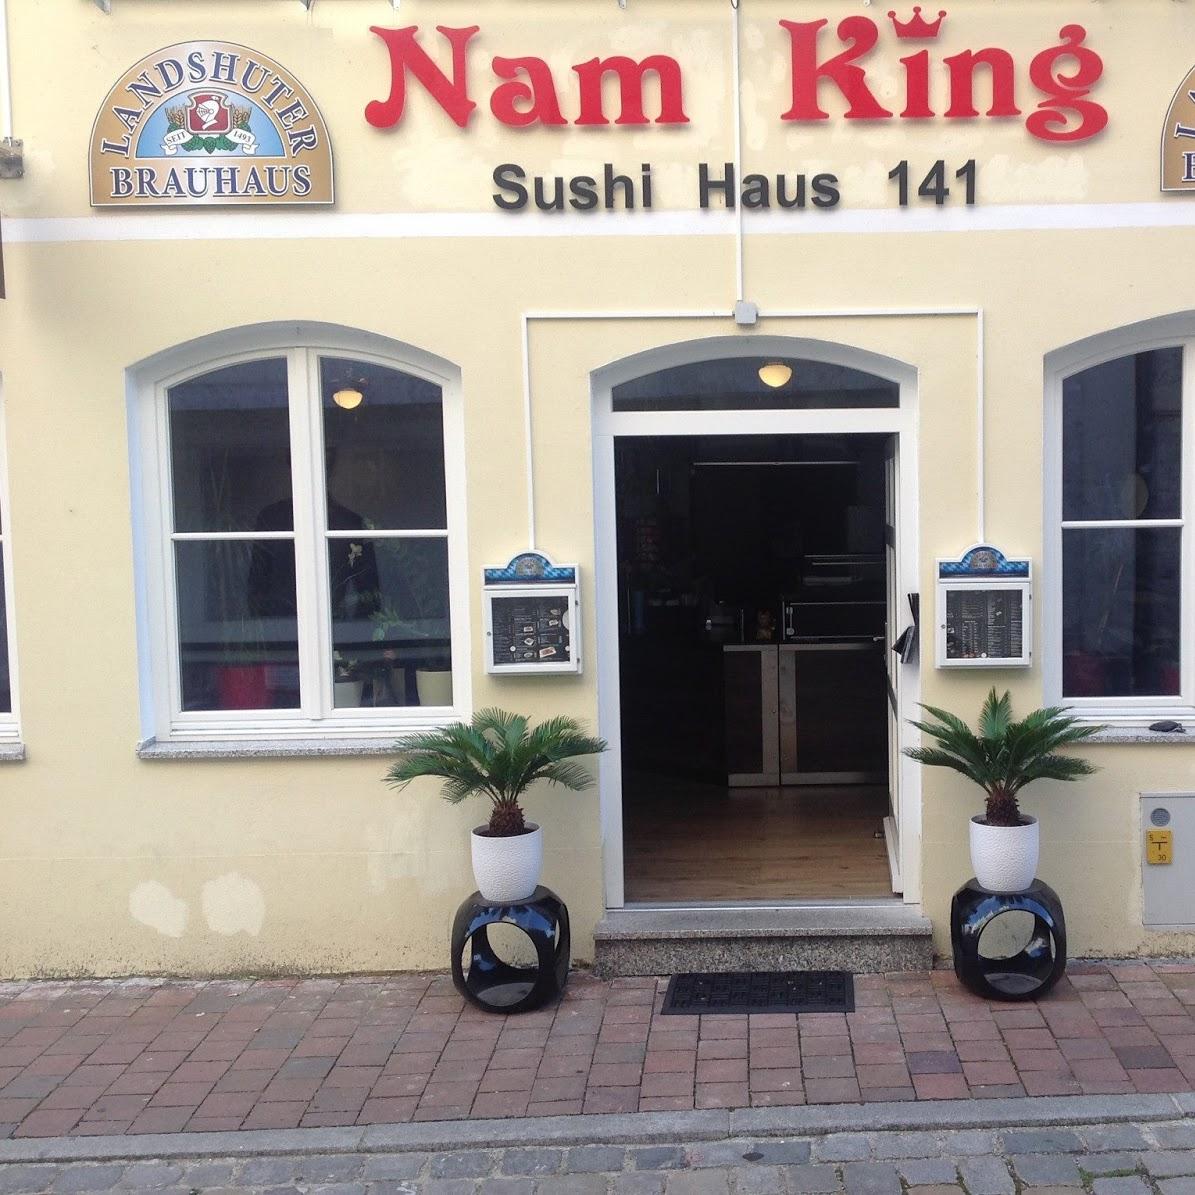 Nam King Sushi Haus 141